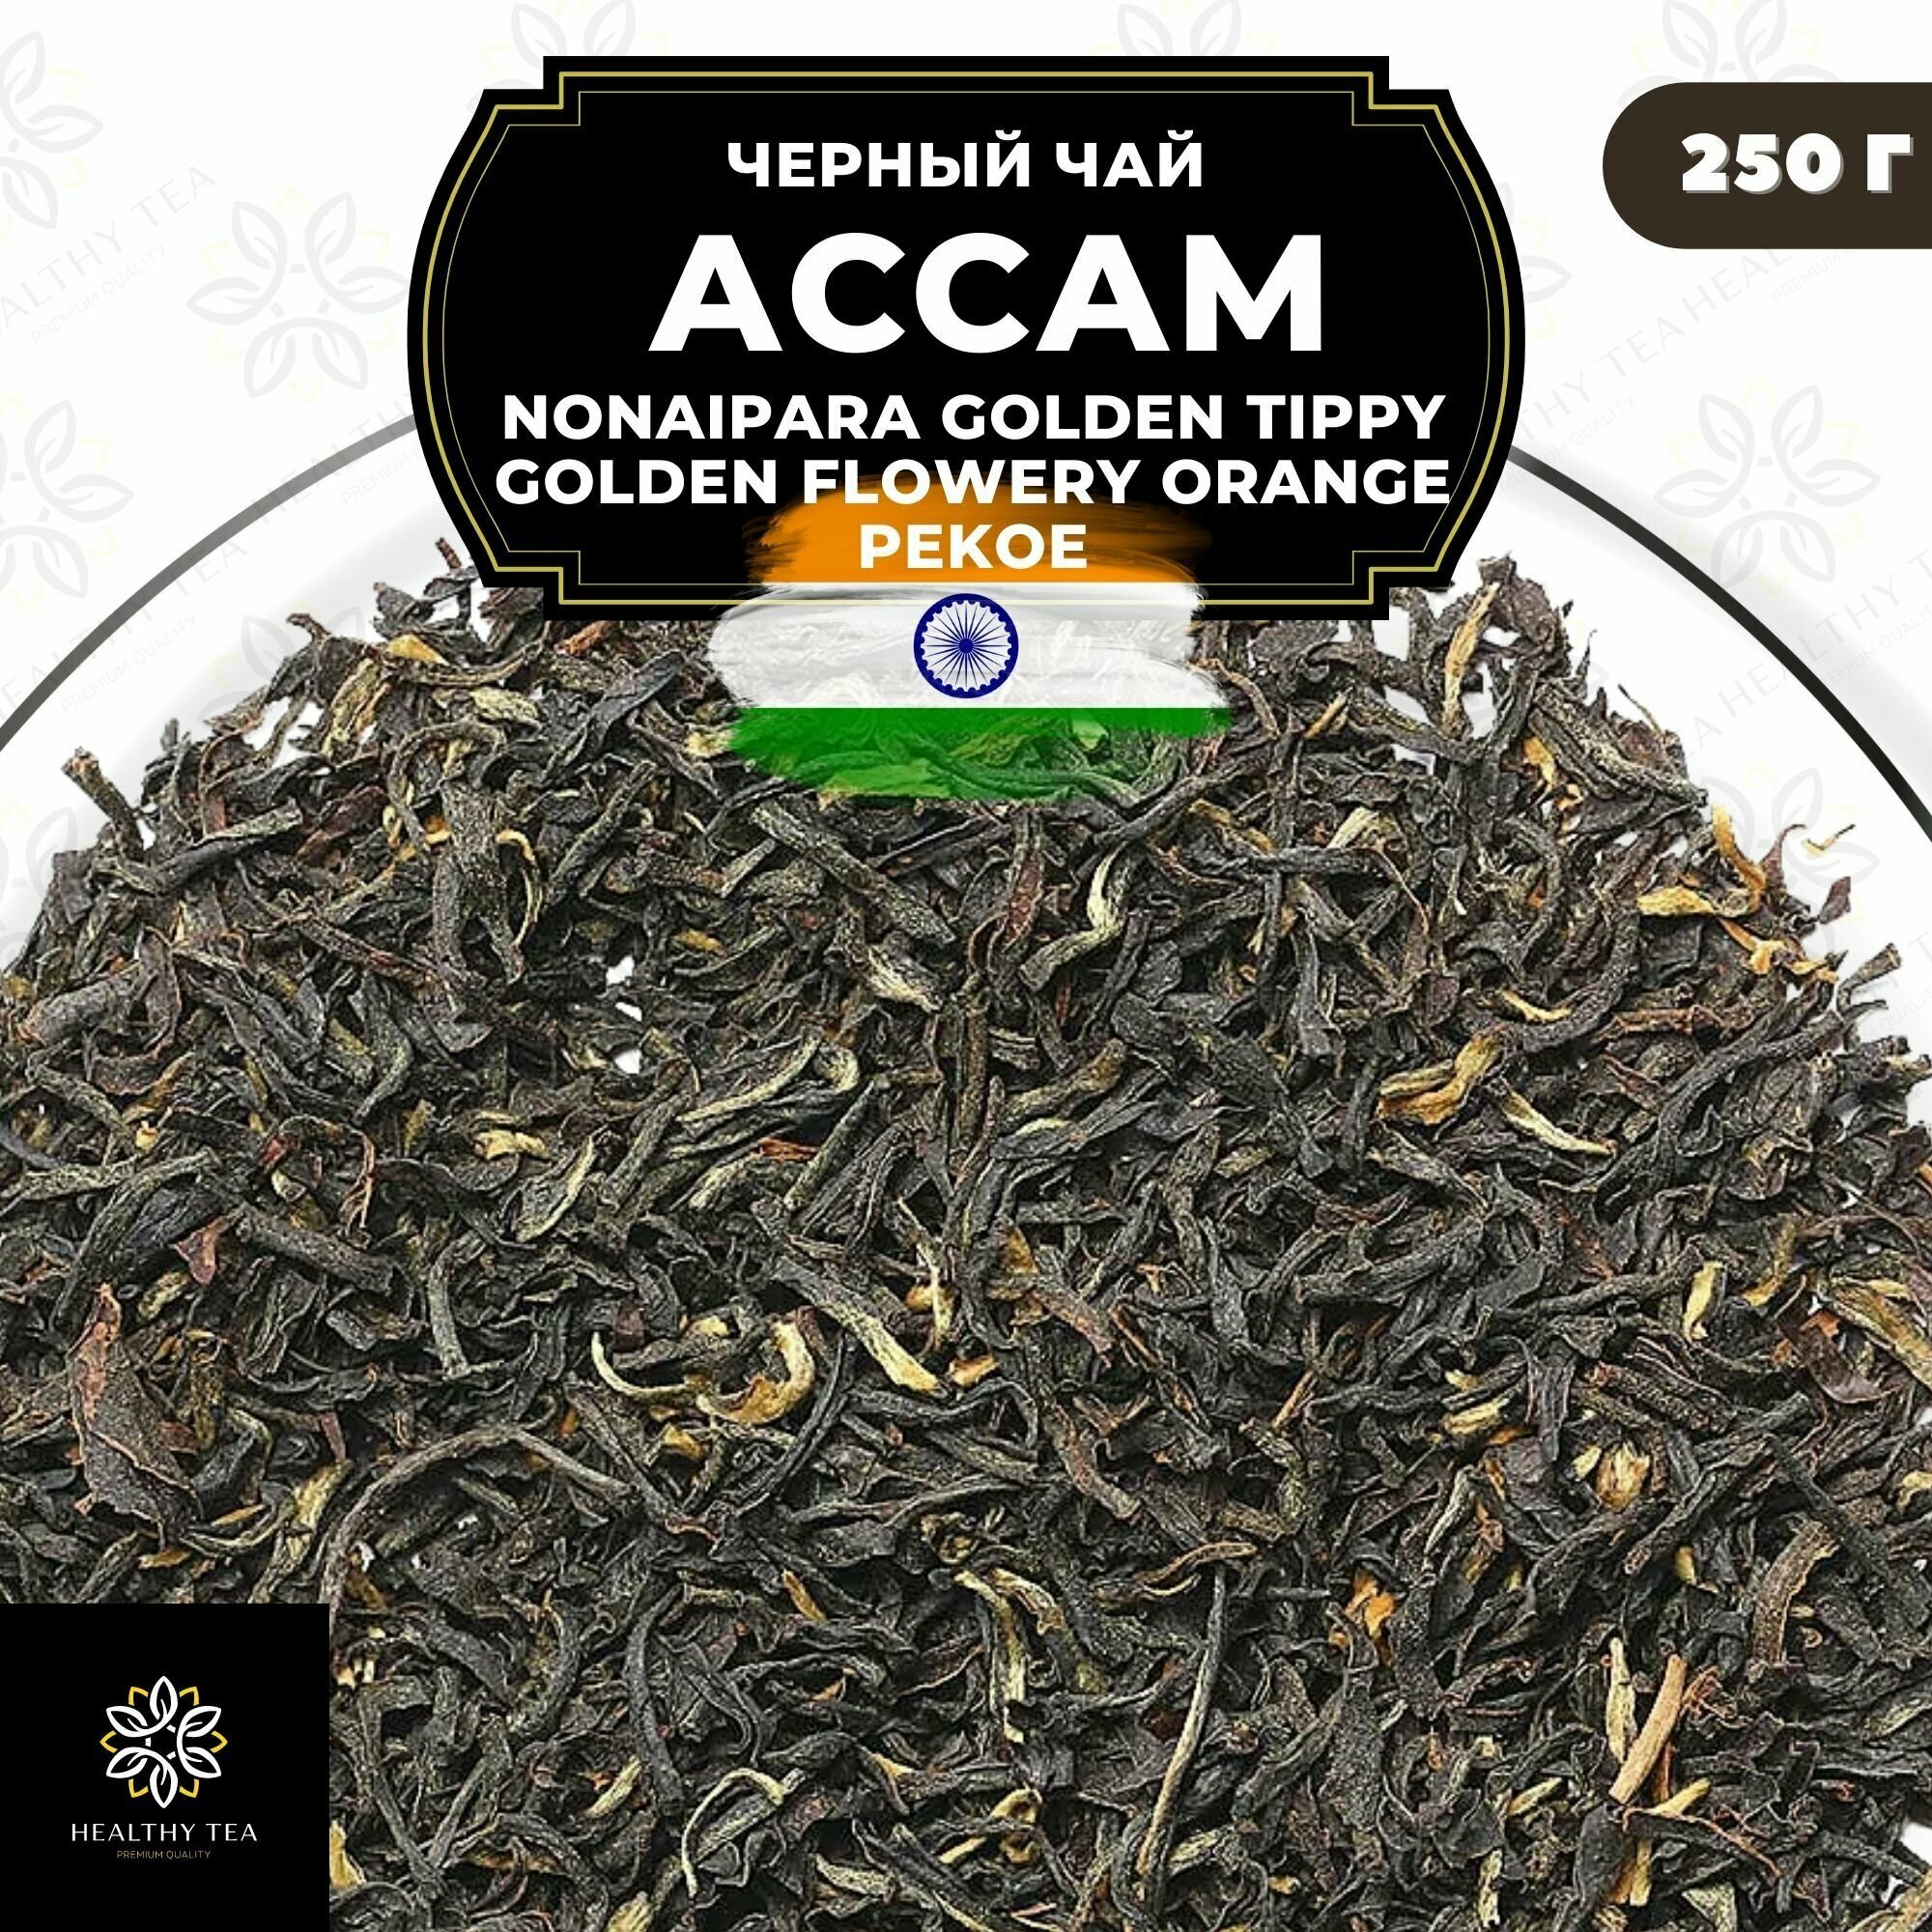 Индийский Черный чай Ассам (Nonaipara GTGFOP) Полезный чай / HEALTHY TEA, 250 гр